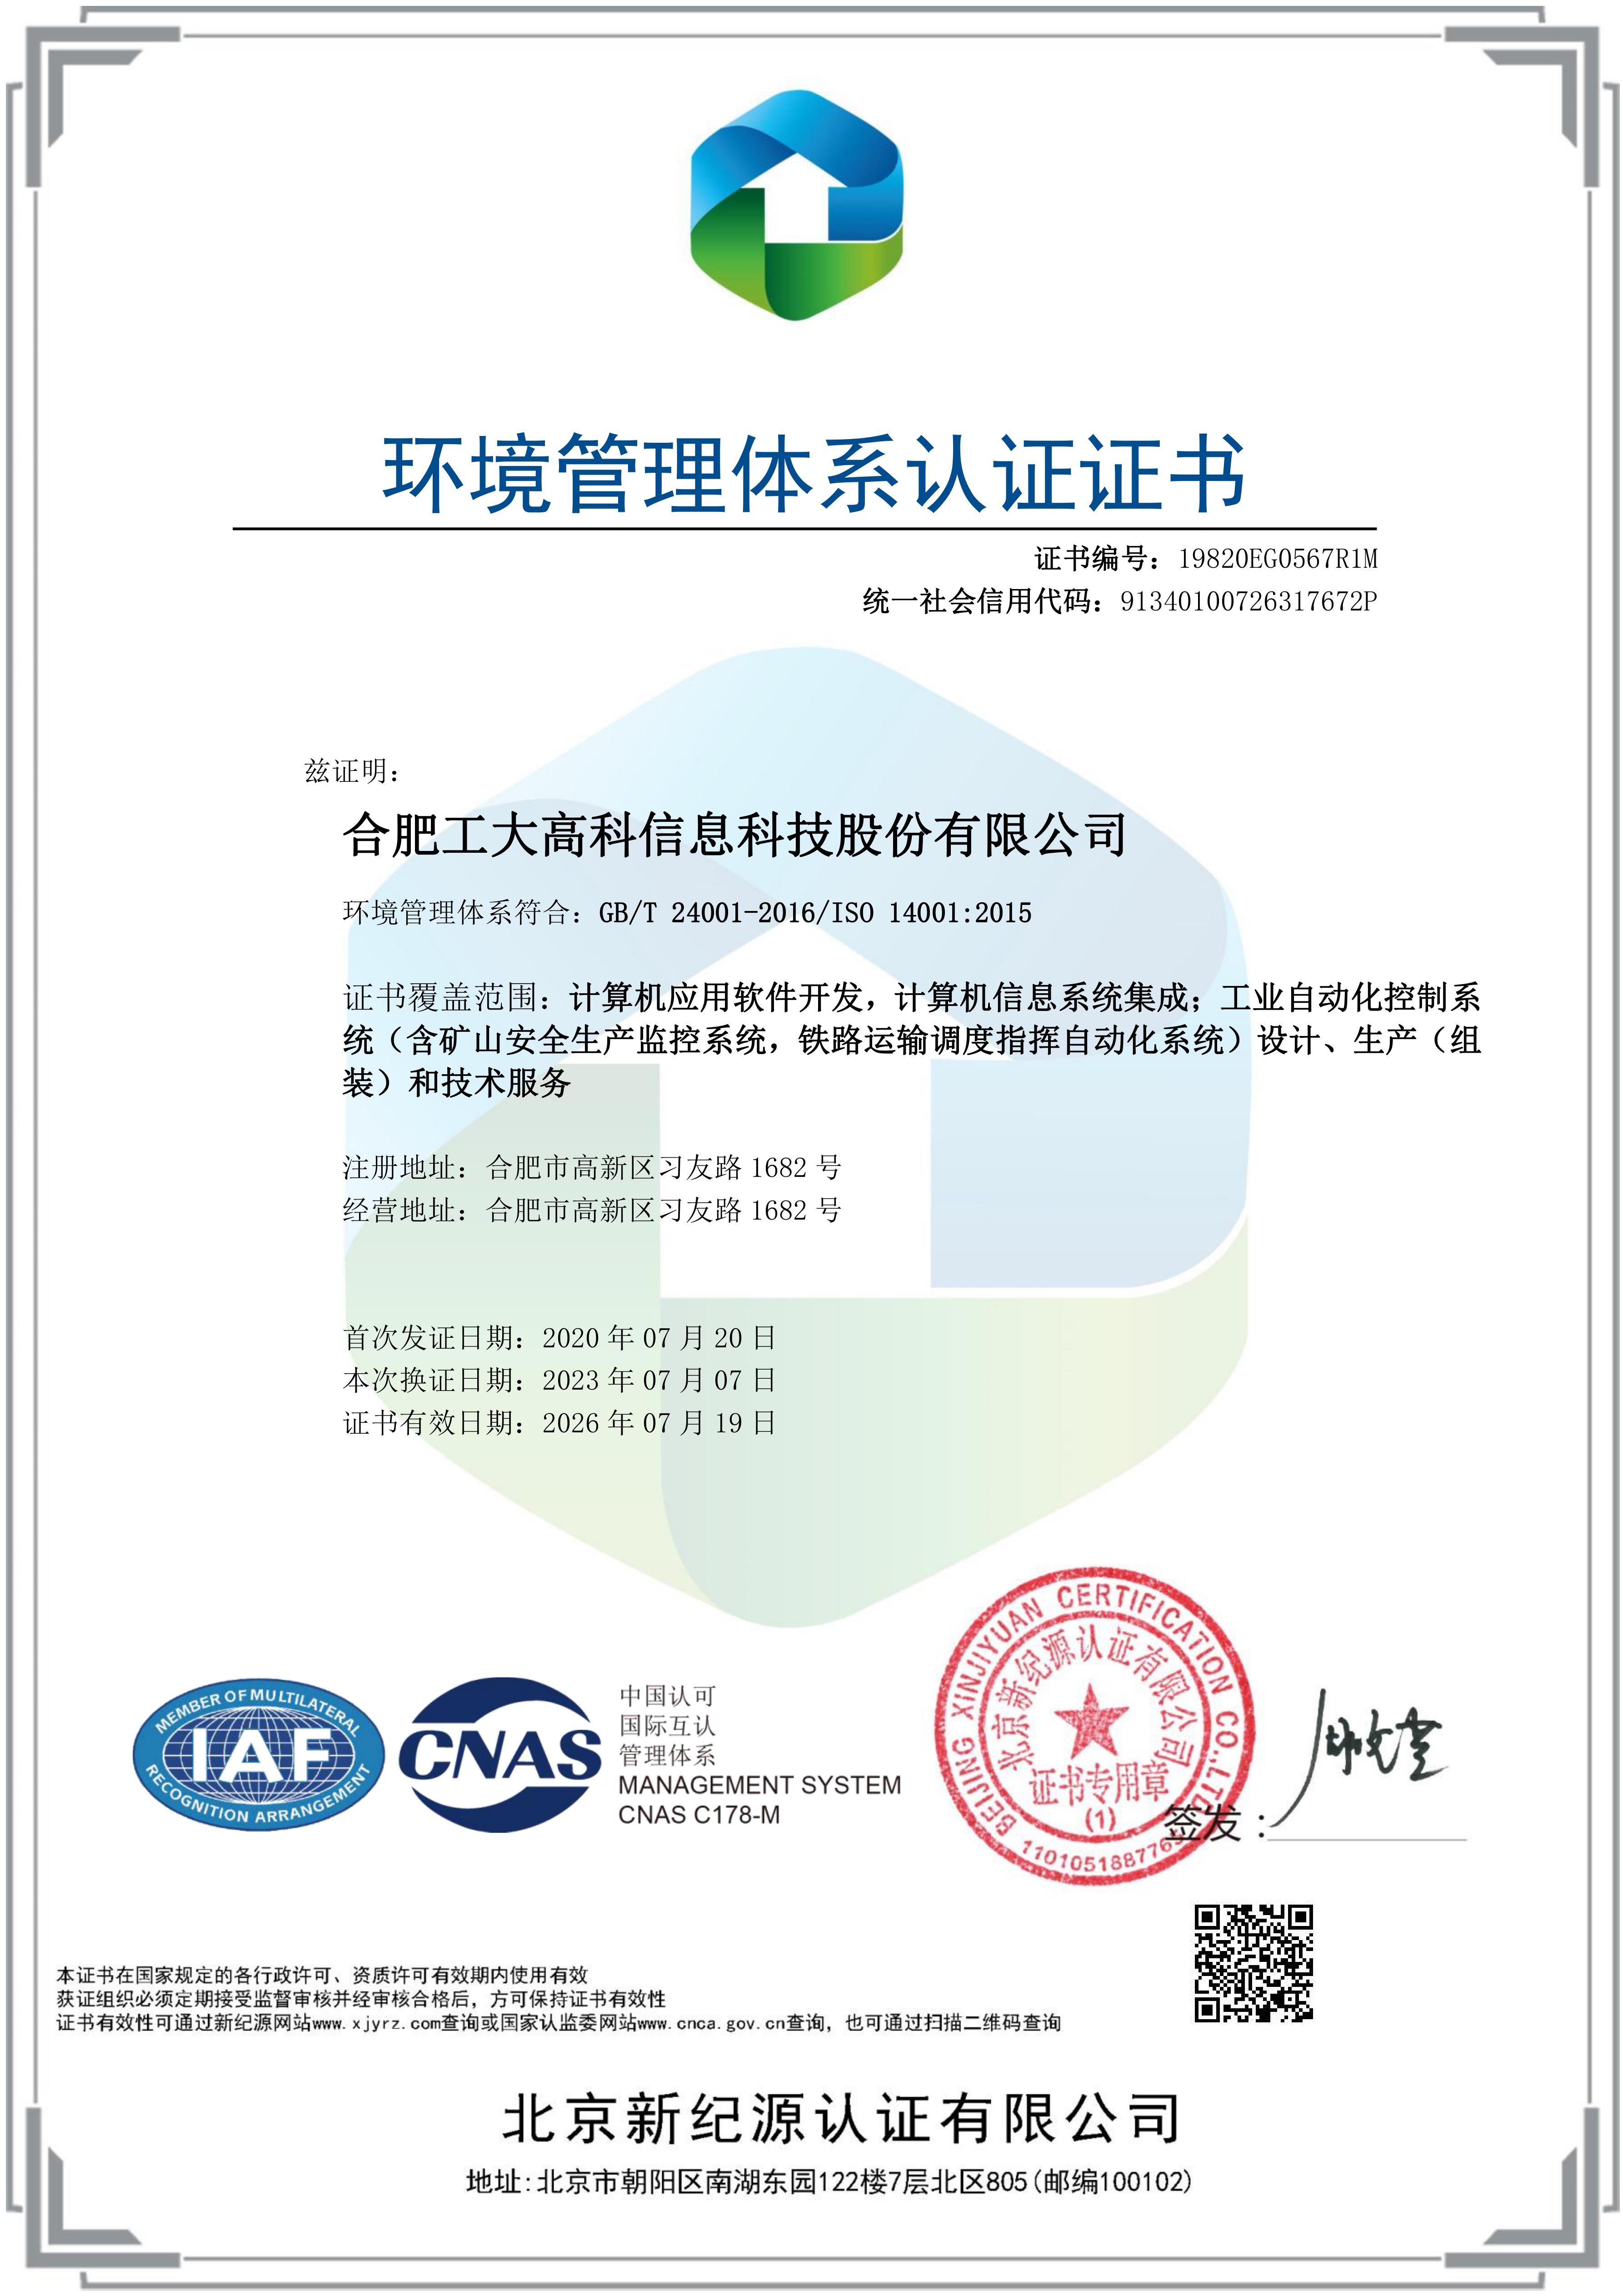 A36 環境體系證書-中文版